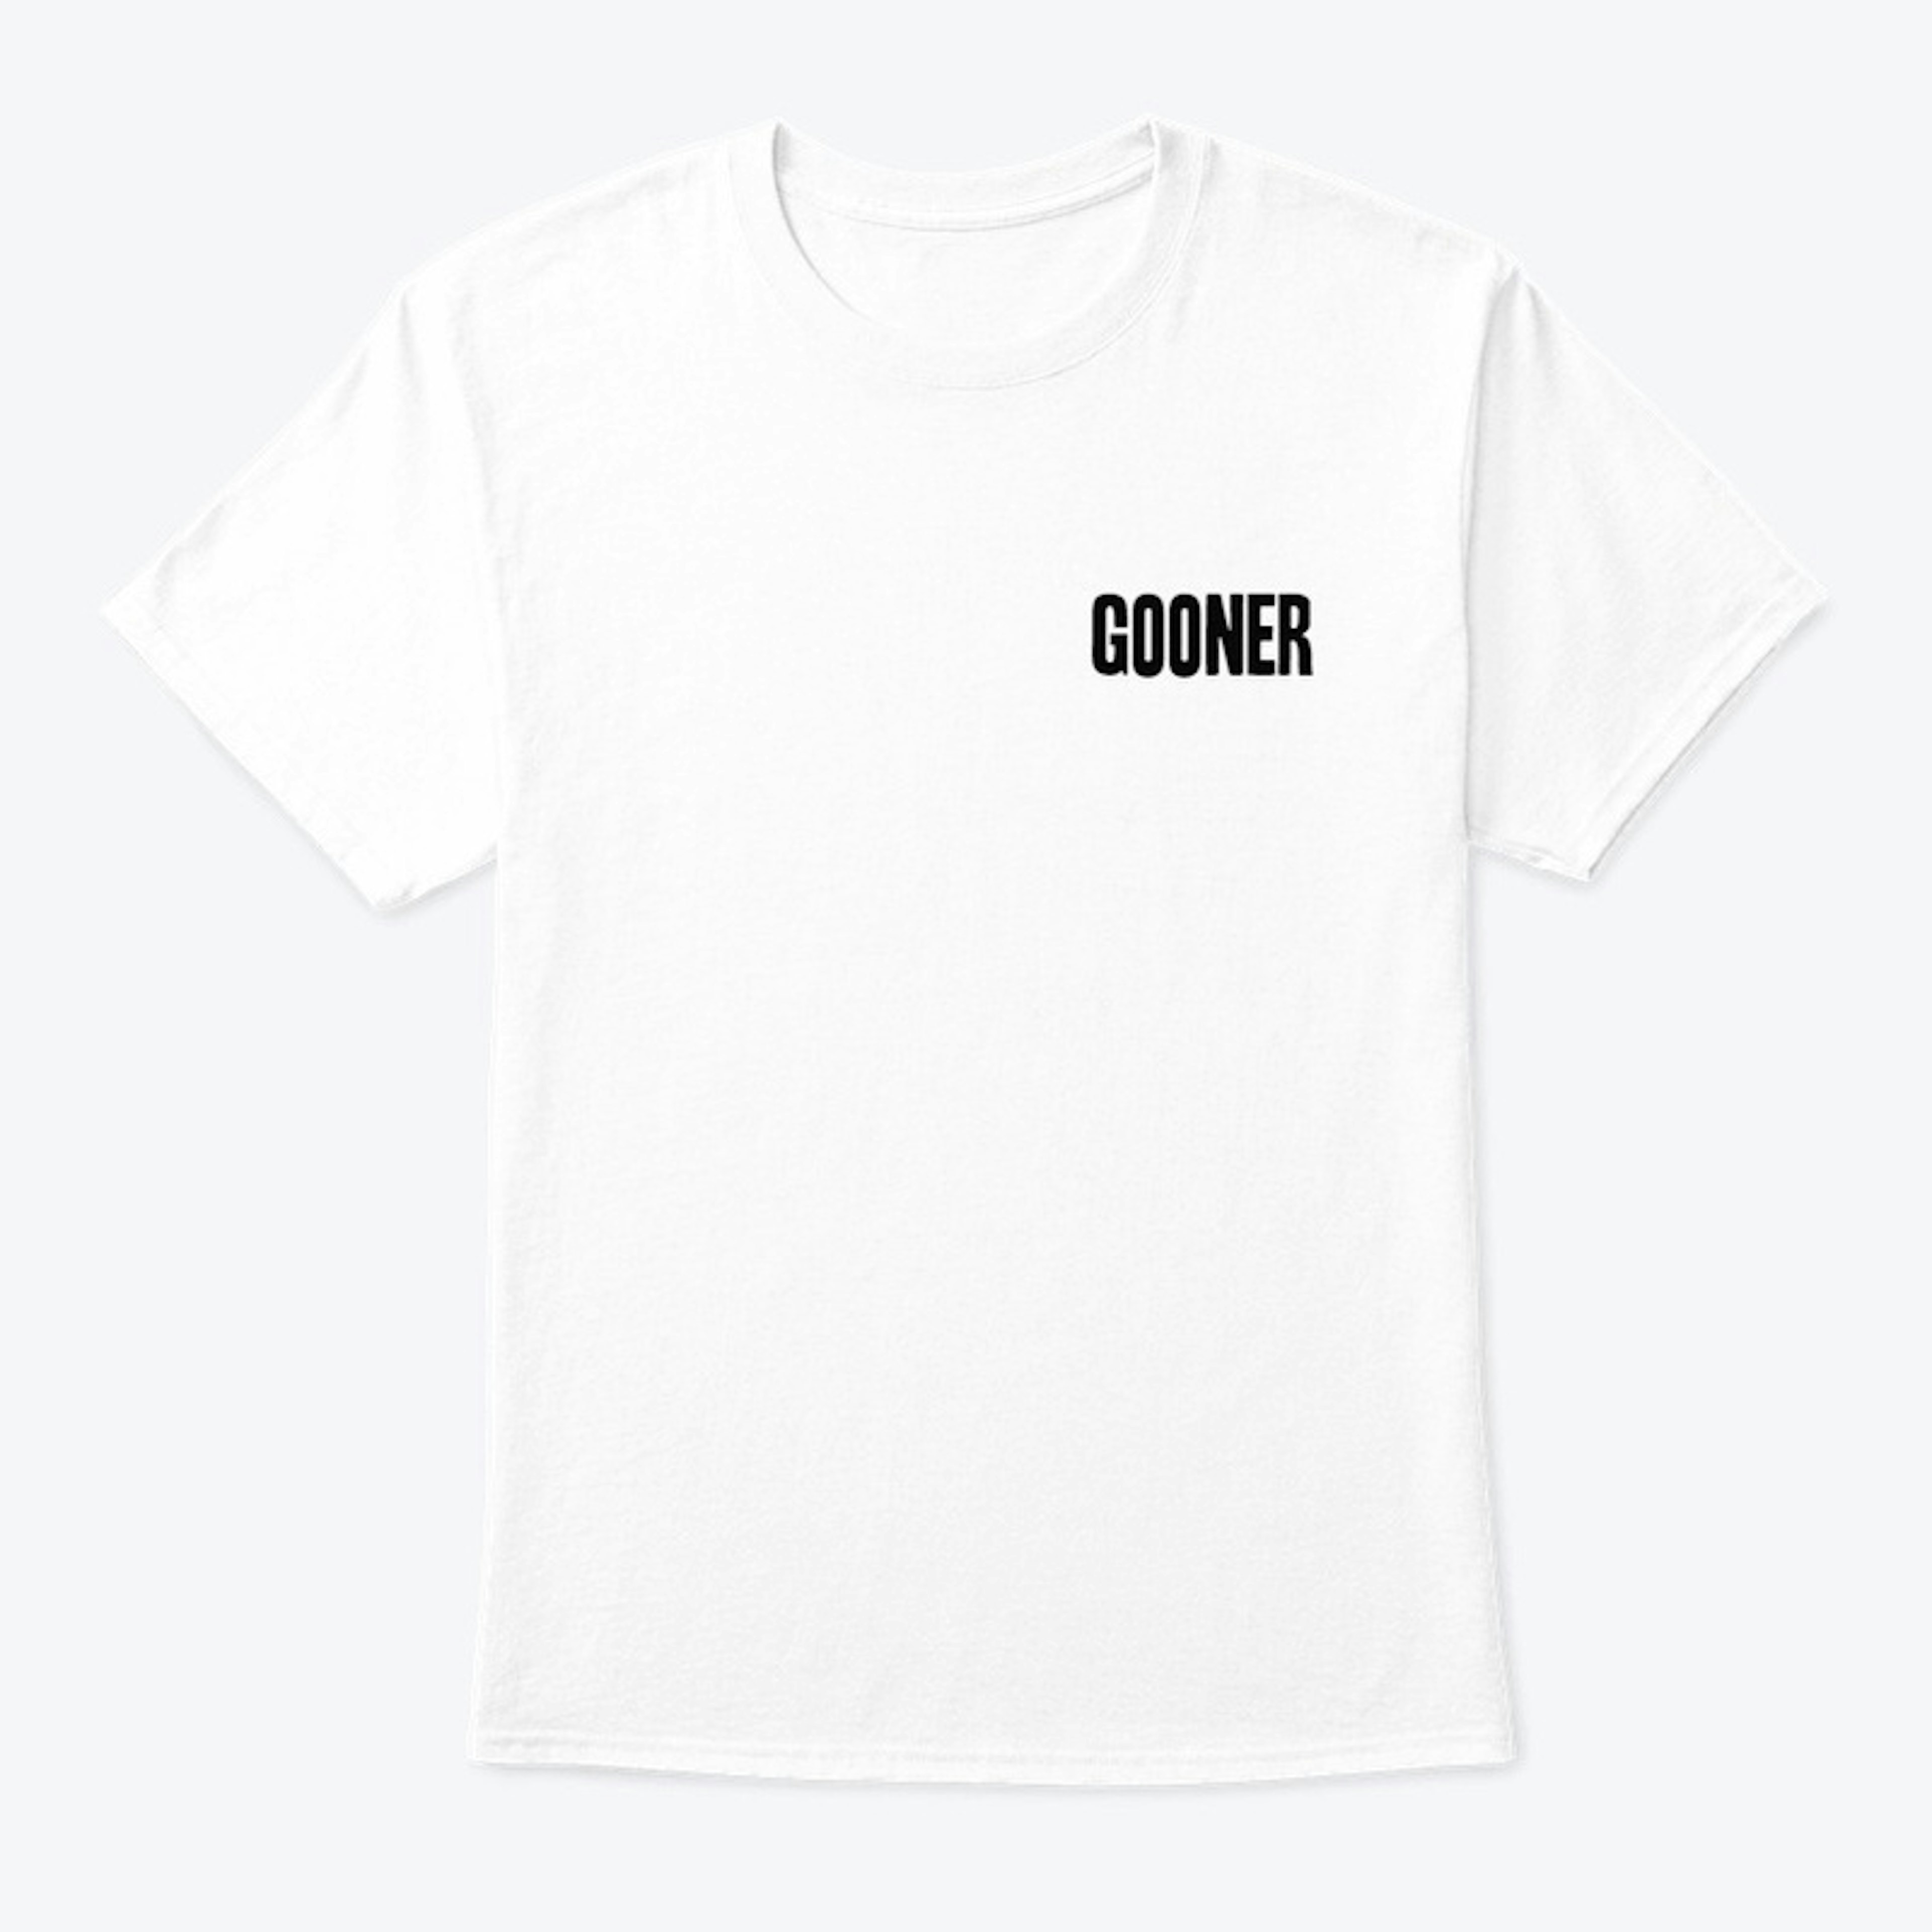 Gooner